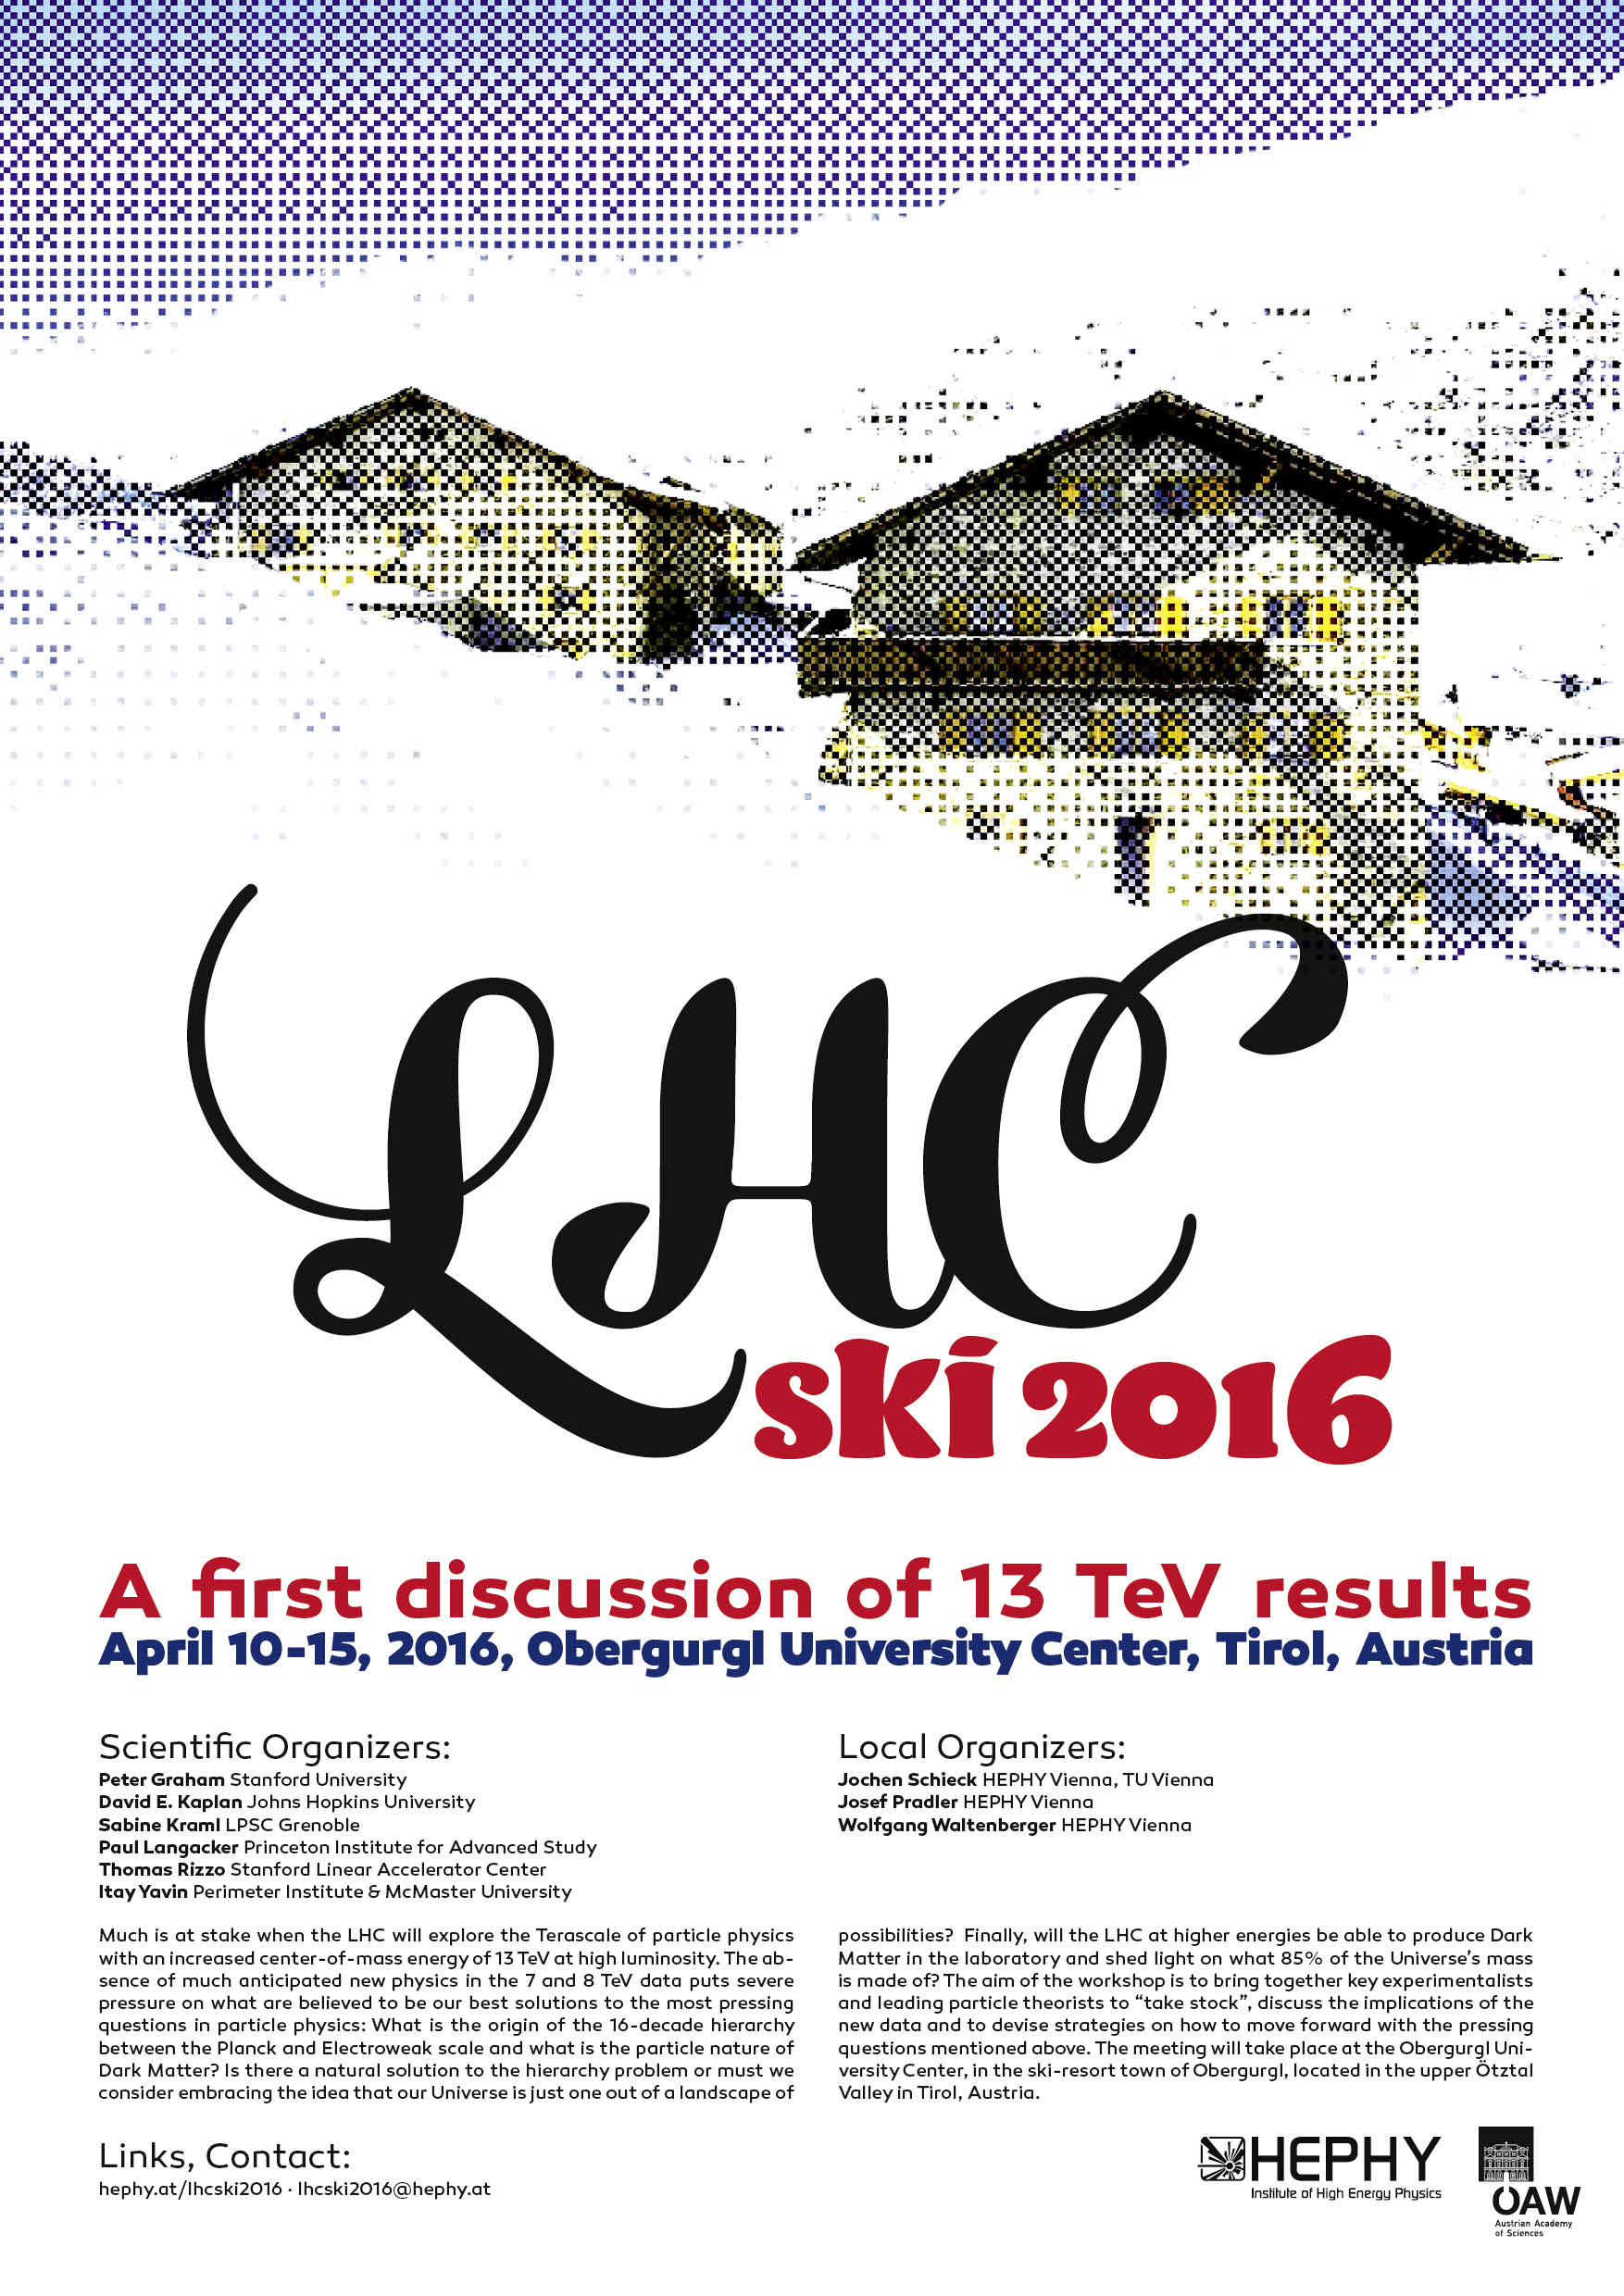 schultz+schultz LHC ski 2016